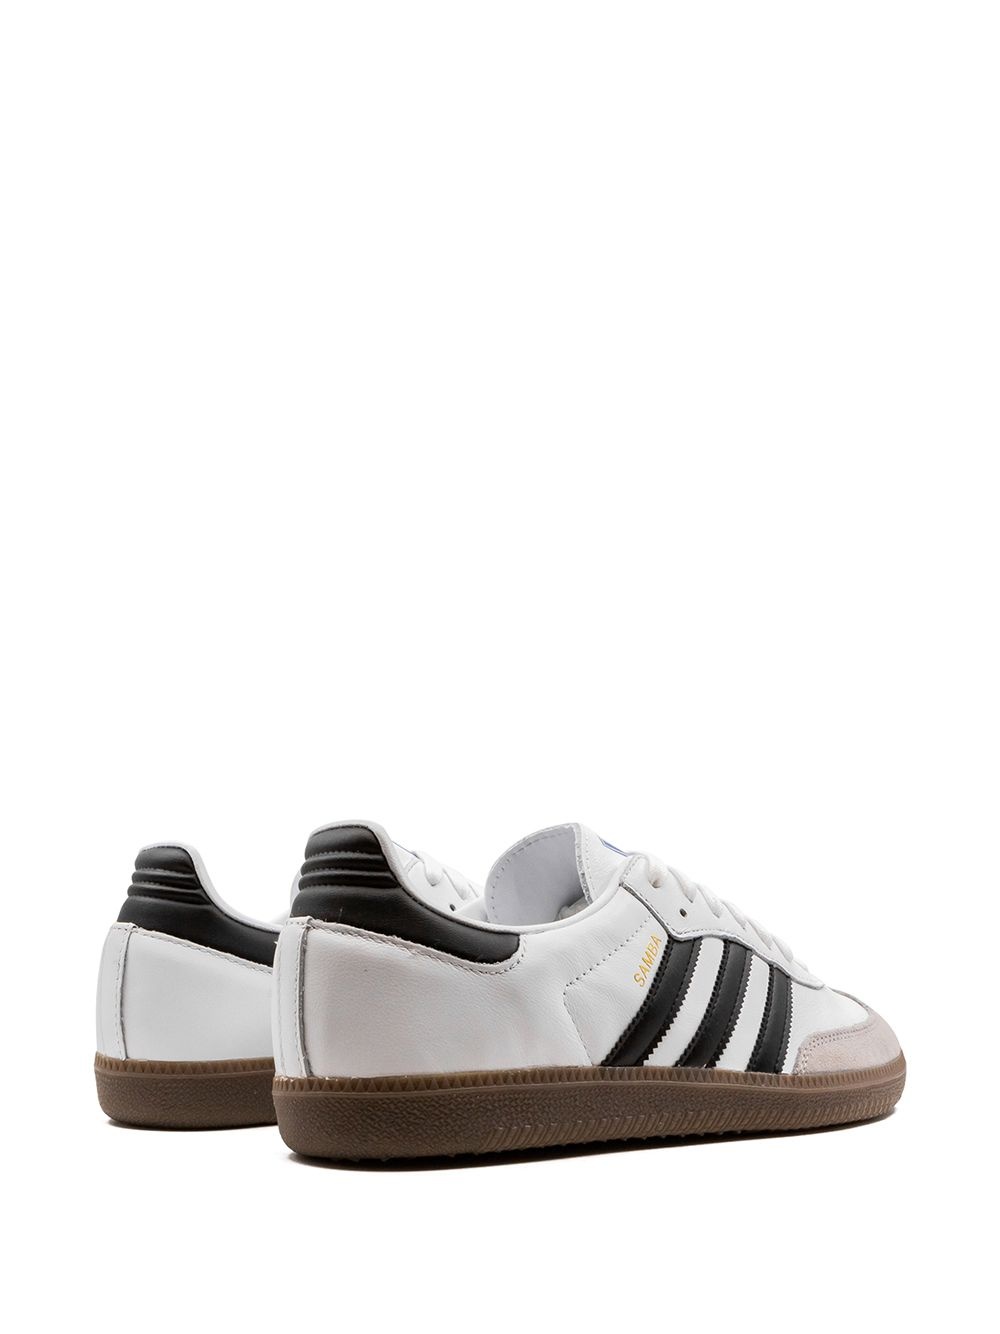 Samba OG "White/Black" sneakers - 3